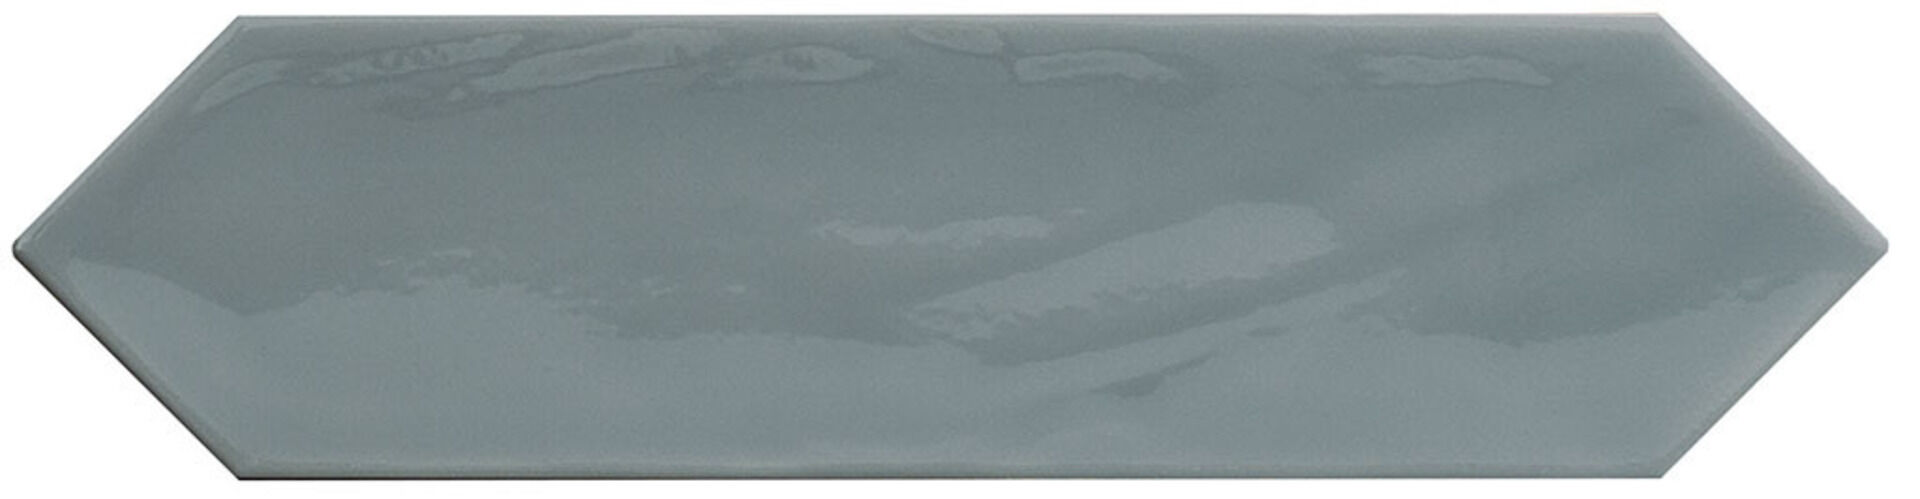 Керамическая плитка KANE PICKET GREY 7,5*30 / коллекция KANE / производитель Cifre / страна Испания